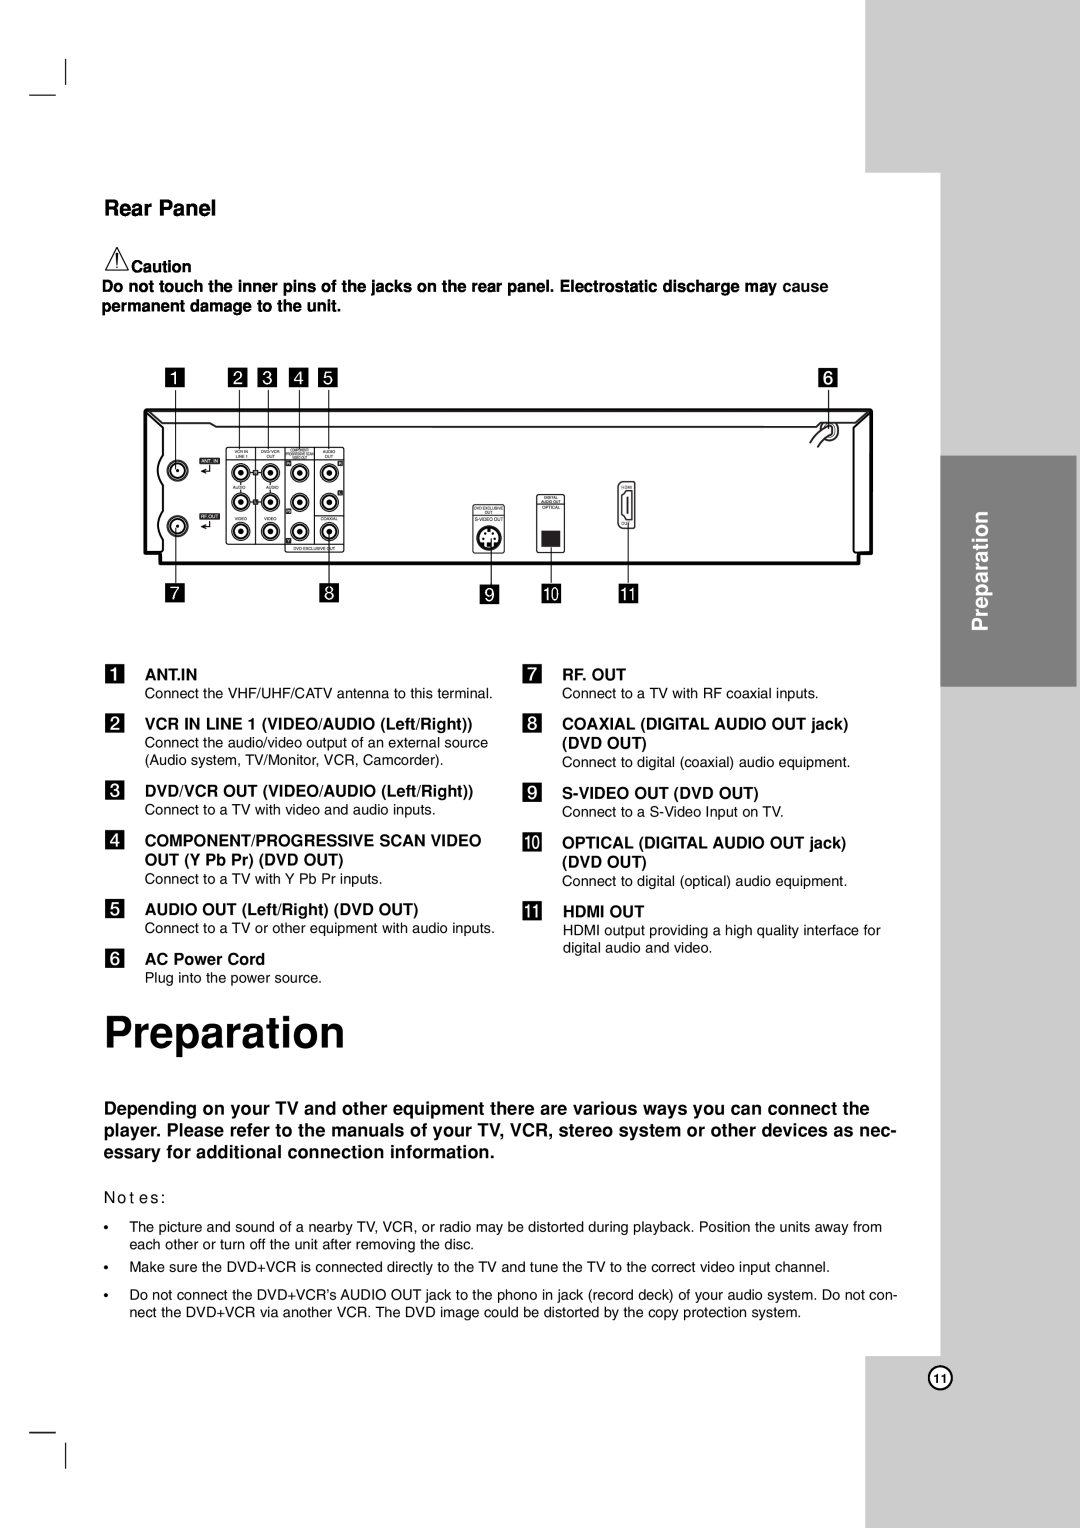 LG Electronics LDX-514 owner manual Preparation, Rear Panel, a b c d e, i j k 